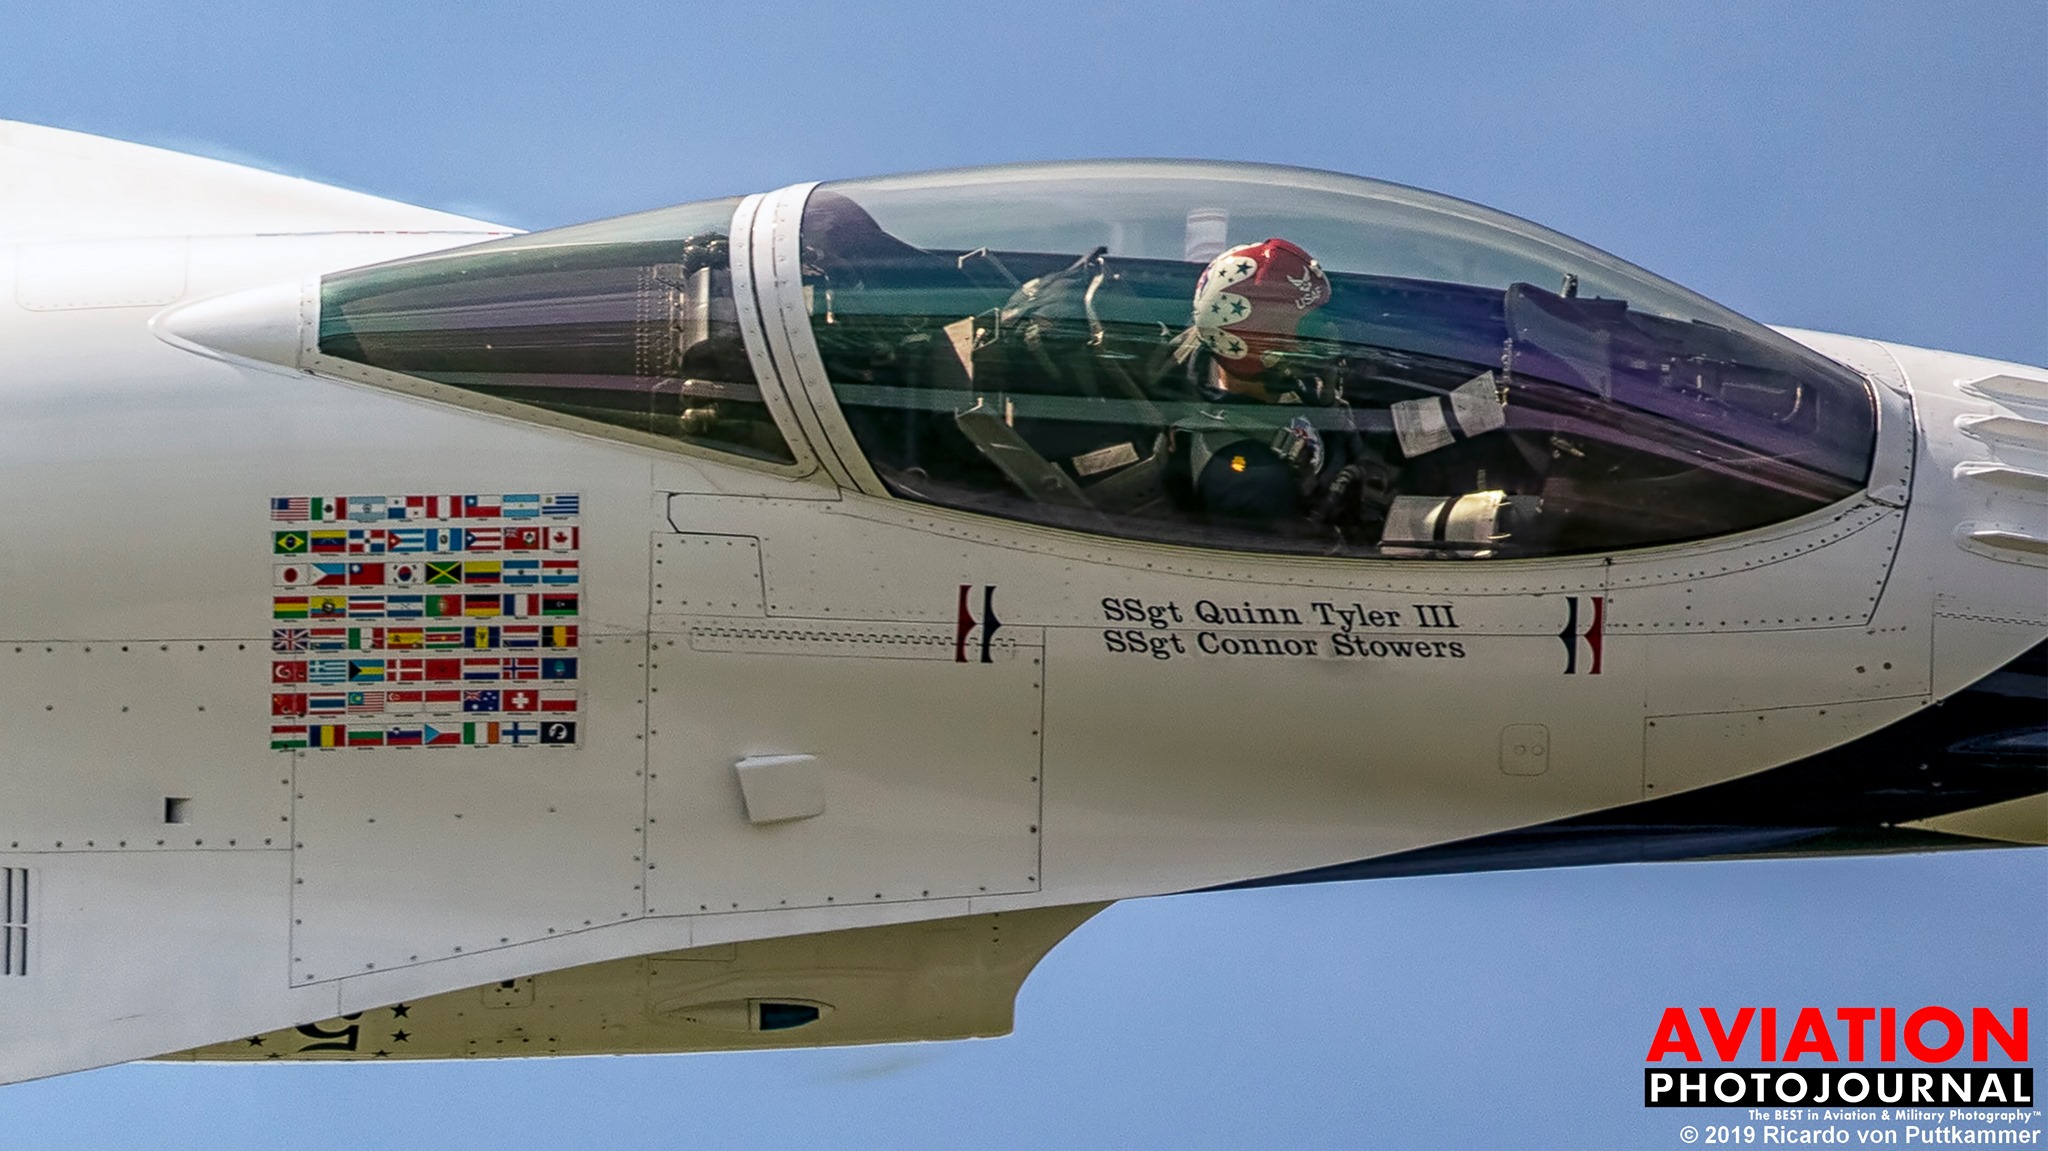 A jó fotós bepillanthat egy katonai kötelék gépének fülkéjébe is... A fotón a Viharmadarak egyik F-16-osa